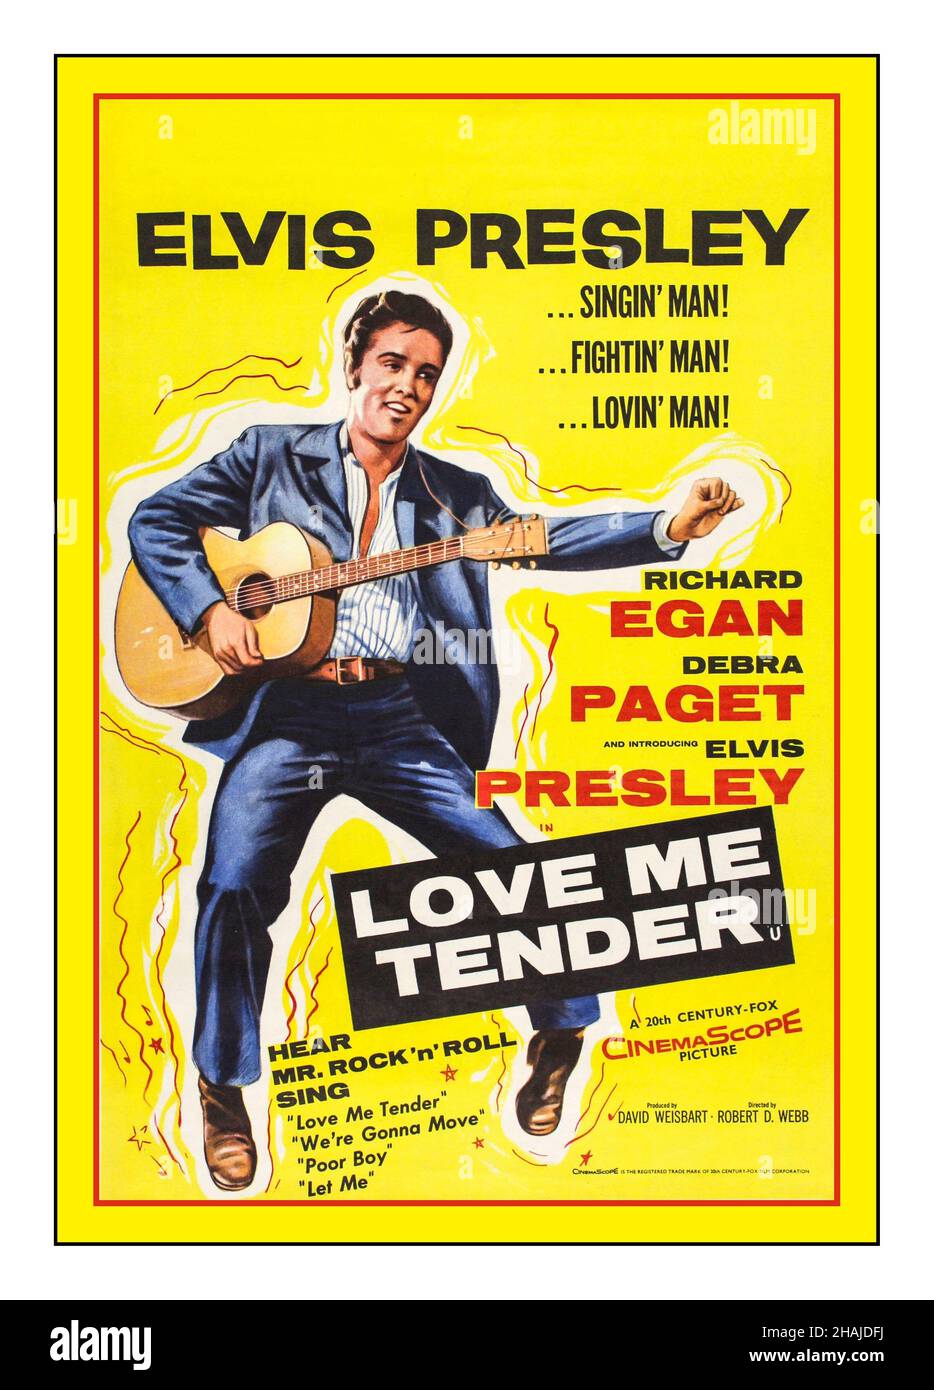 ELVIS PRESLEY Vintage Movie Film Poster 'Love Me Tender è un film Western musicale americano del 1956 diretto da Robert D. Webb, e pubblicato da 20th Century Fox il 15 novembre 1956. Il film, che prende il nome dalla canzone, è protagonista Richard Egan, Debra Paget ed Elvis Presley nel suo debutto recitazione. Come debutto del film di Presley, è stato l'unico momento nella sua carriera di recitazione che non ha ricevuto la fatturazione superiore. Foto Stock